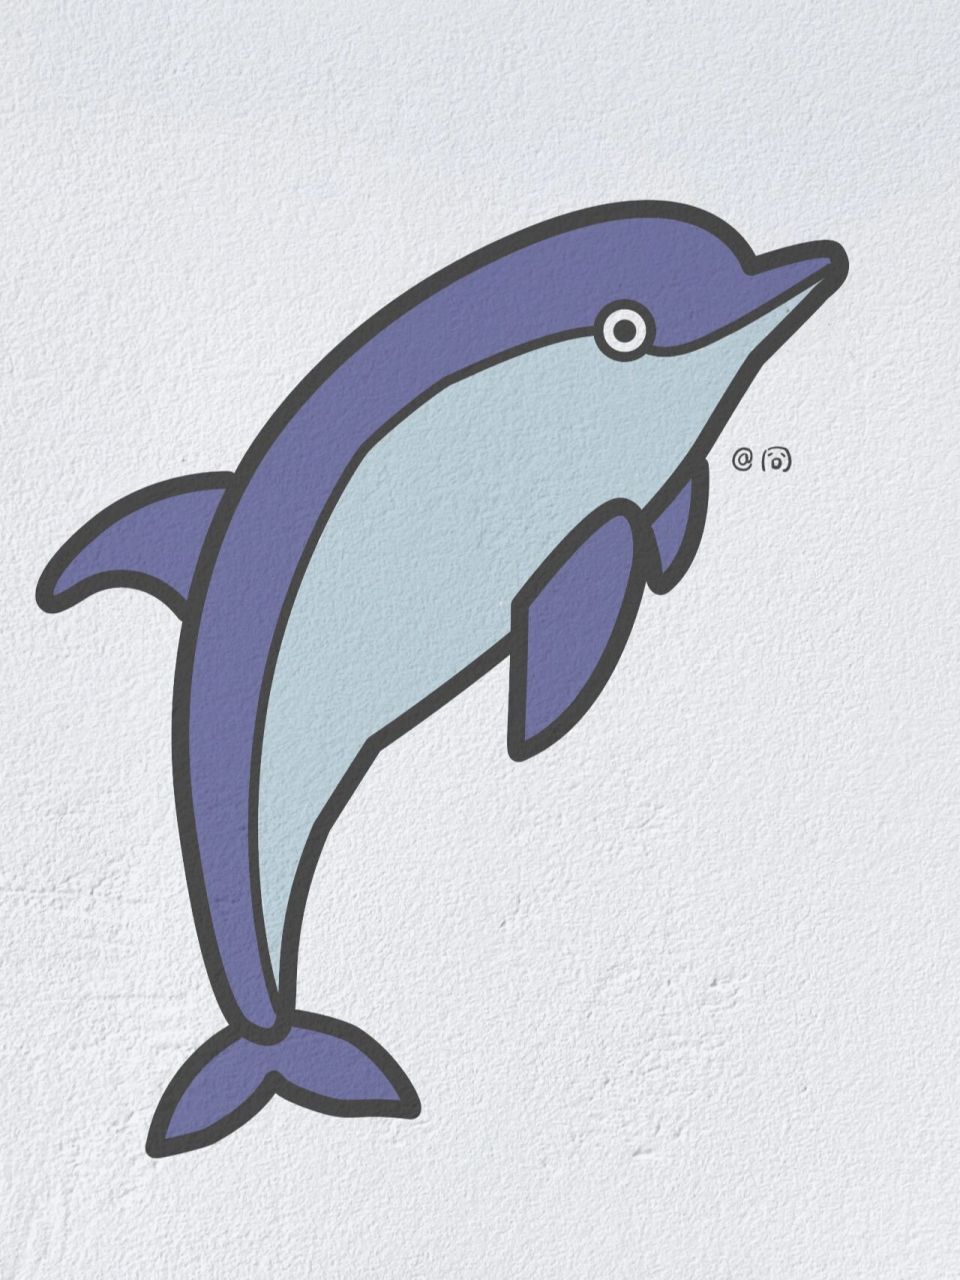 海豚的简笔画画法图片